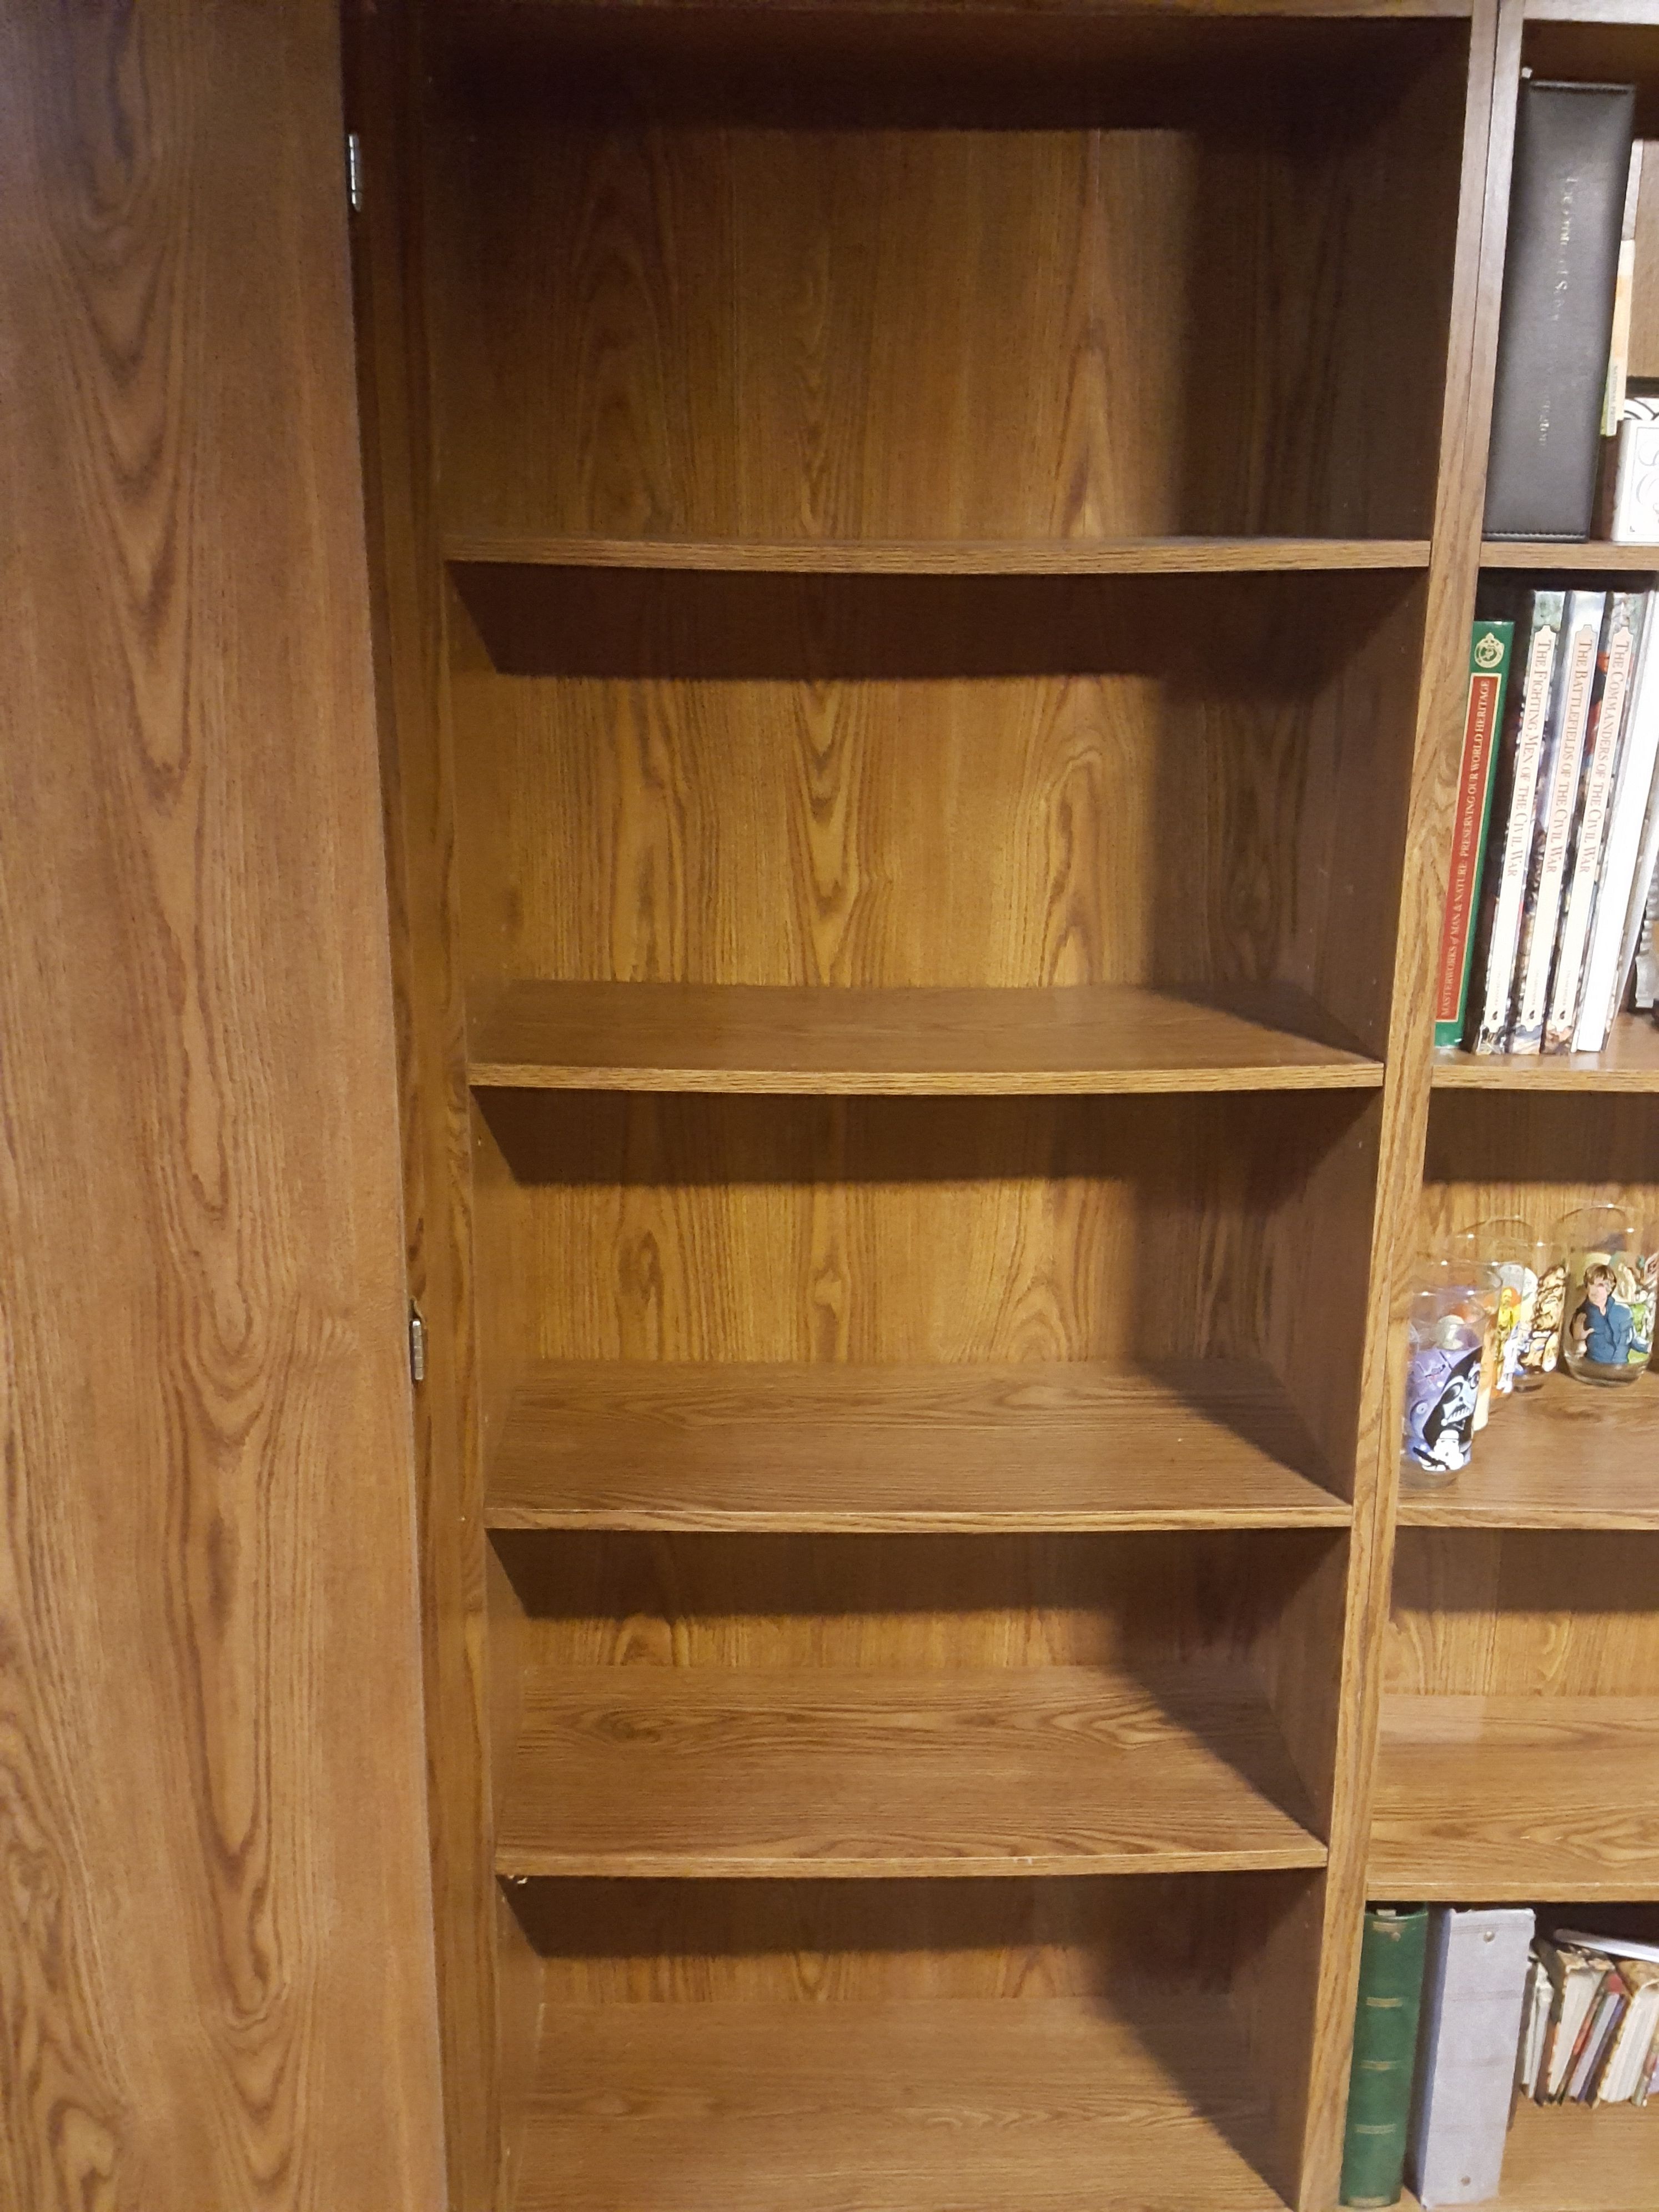 2 Bookshelves